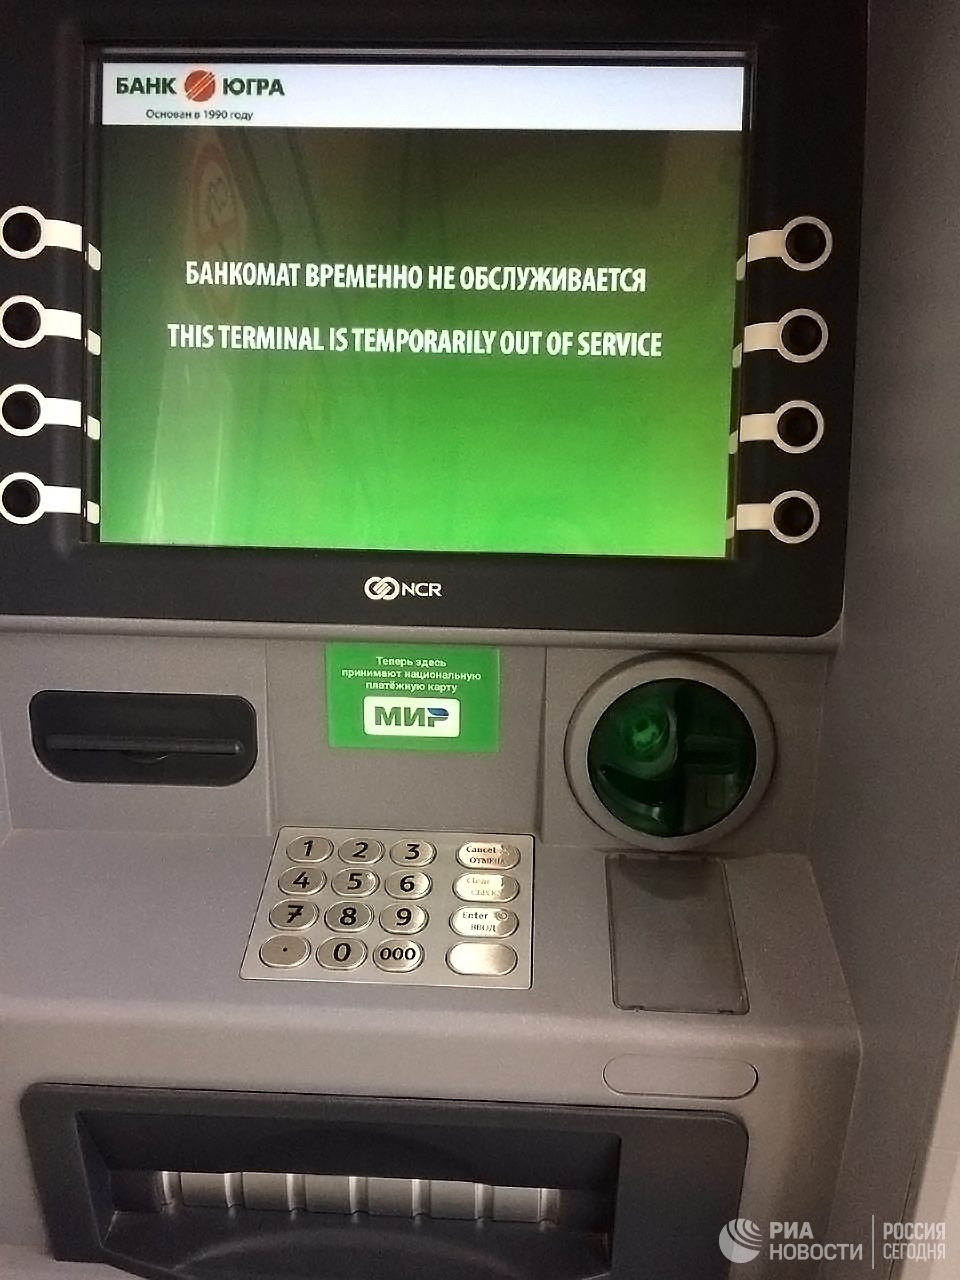 Сбербанк заблокирует банкоматы. Банкомат. Карта в банкомате. Экран банкомата. Карта банкоматов Сбербанка.